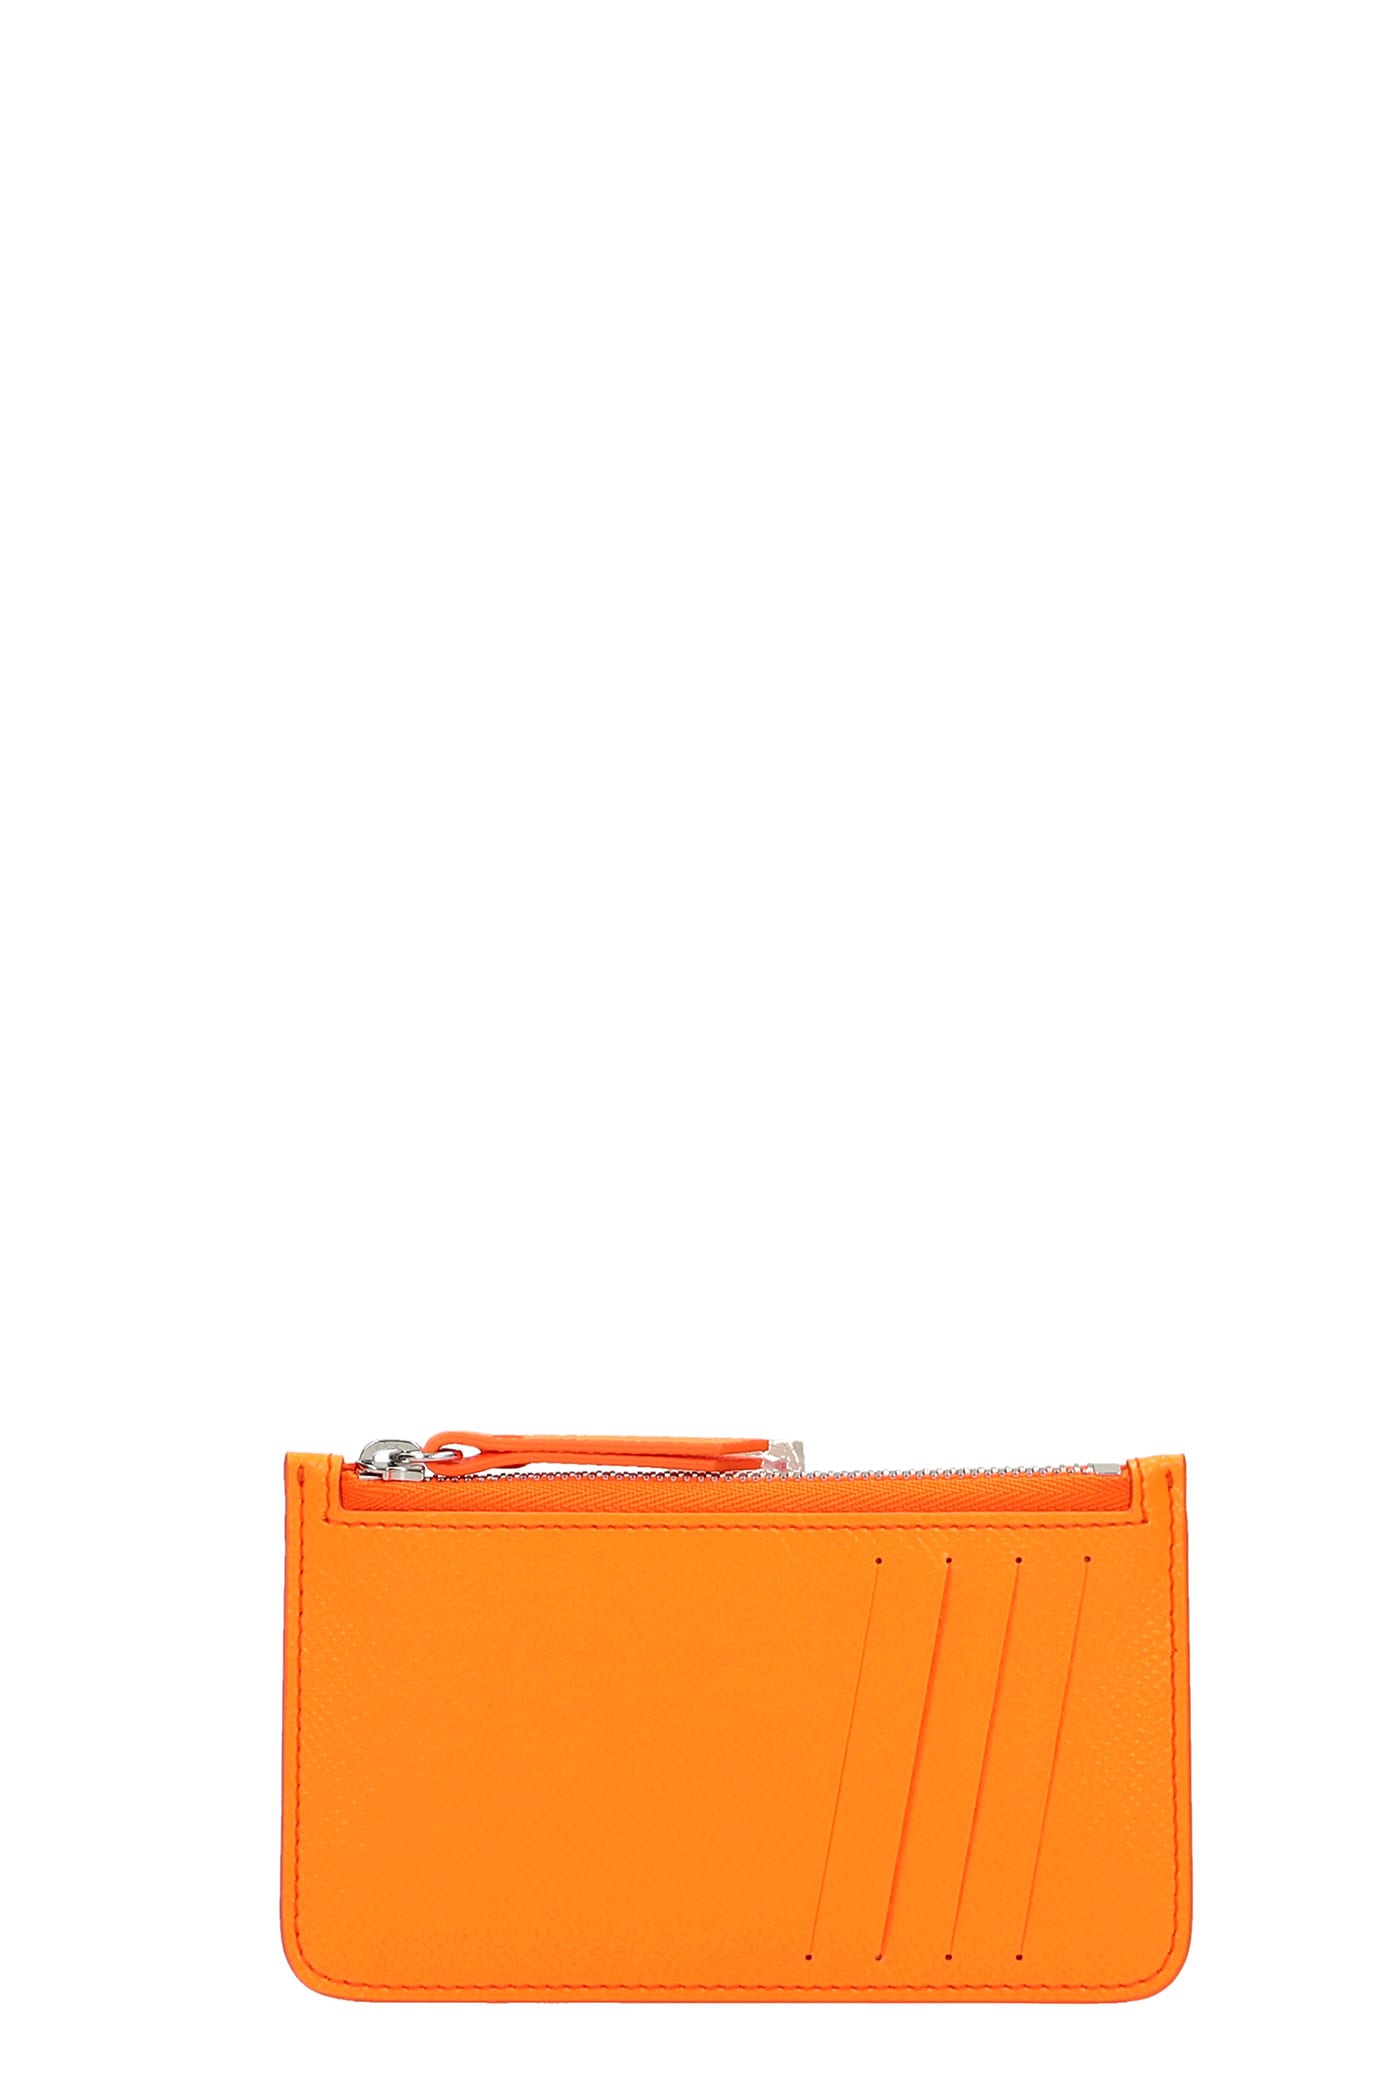 Maison Margiela Wallet In Orange Leather